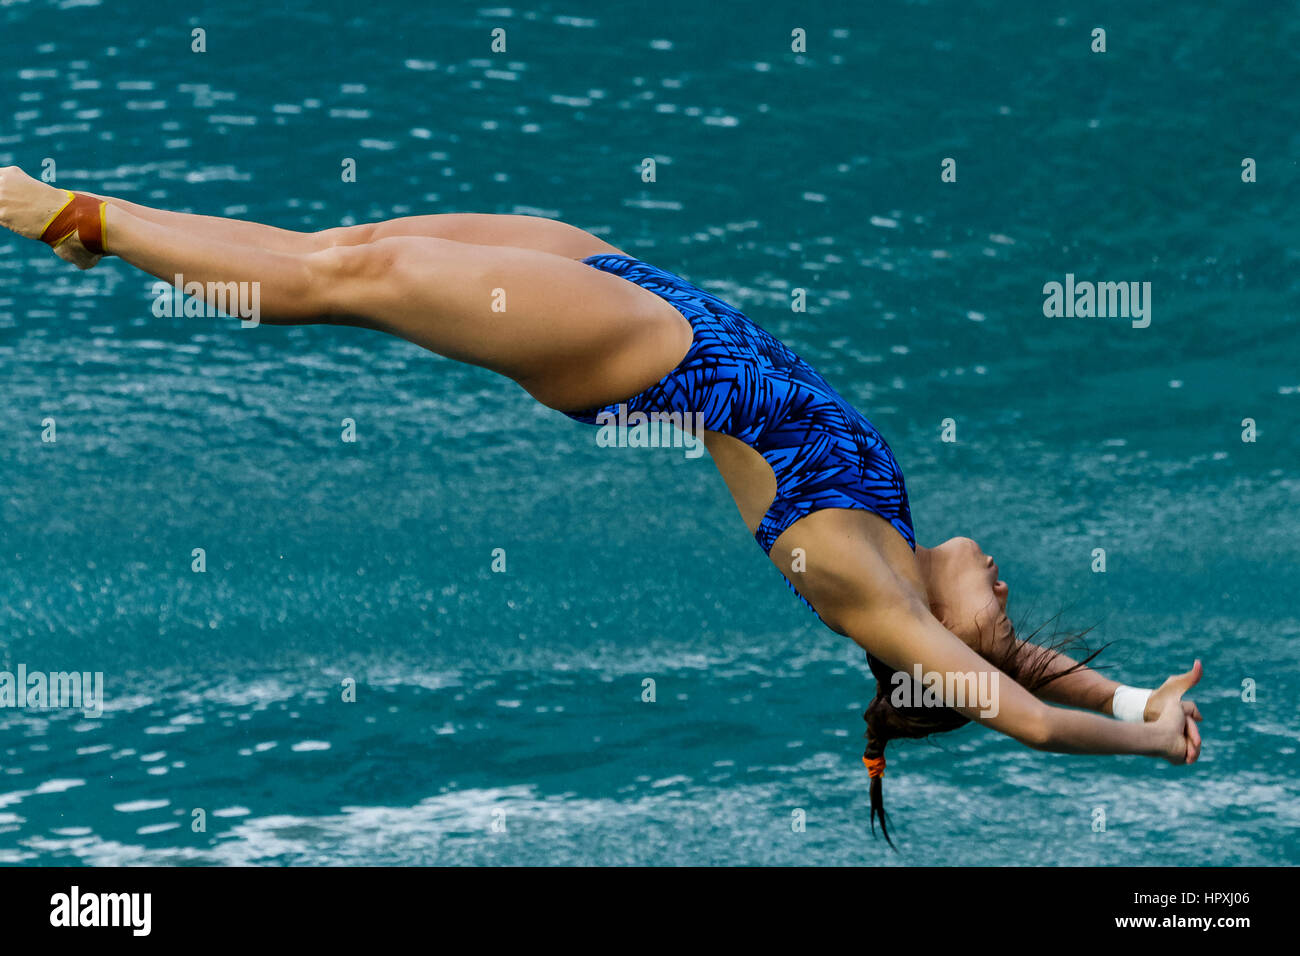 Río de Janeiro, Brasil. 14 de agosto de 2016 Esther Qin (AUS) compite en mujeres buceo trampolín 3m final en los Juegos Olímpicos de Verano de 2016. ©Paul J. Sutt Foto de stock